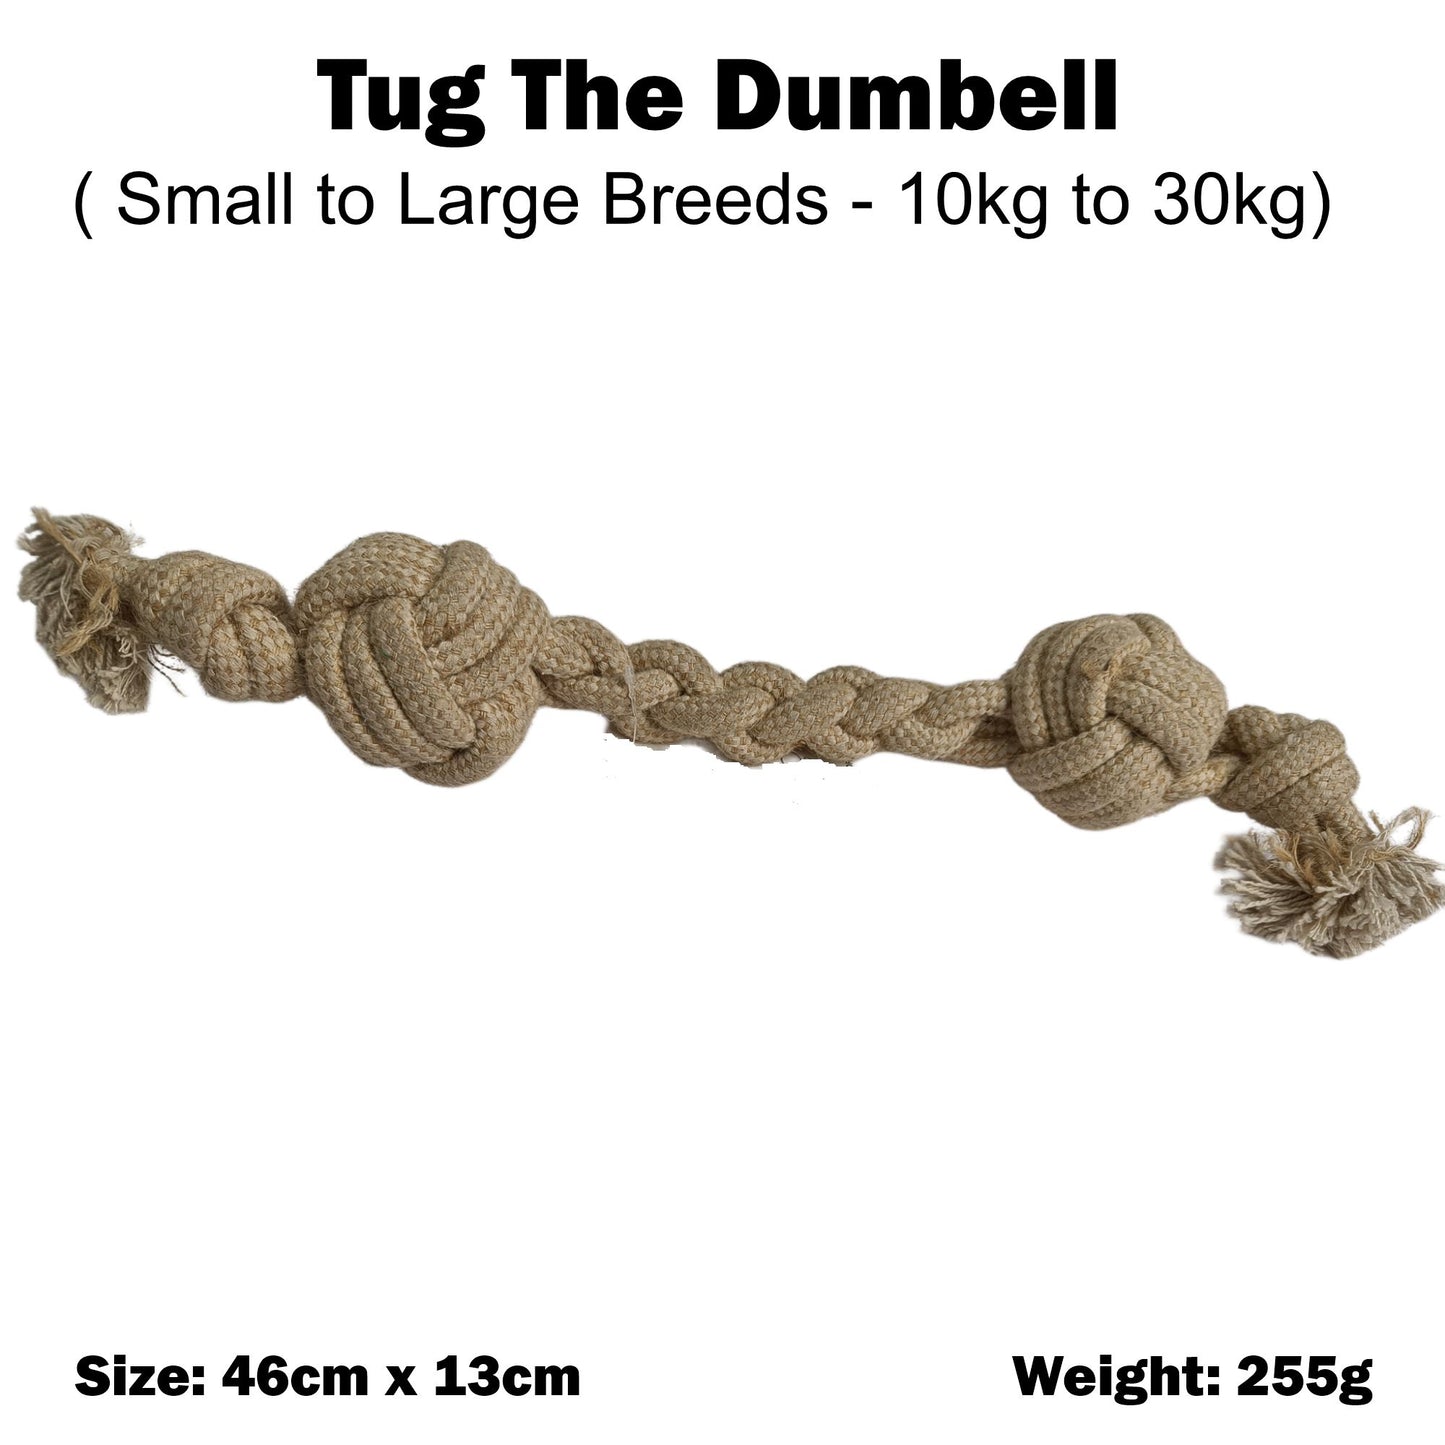 Tug the Dumbell